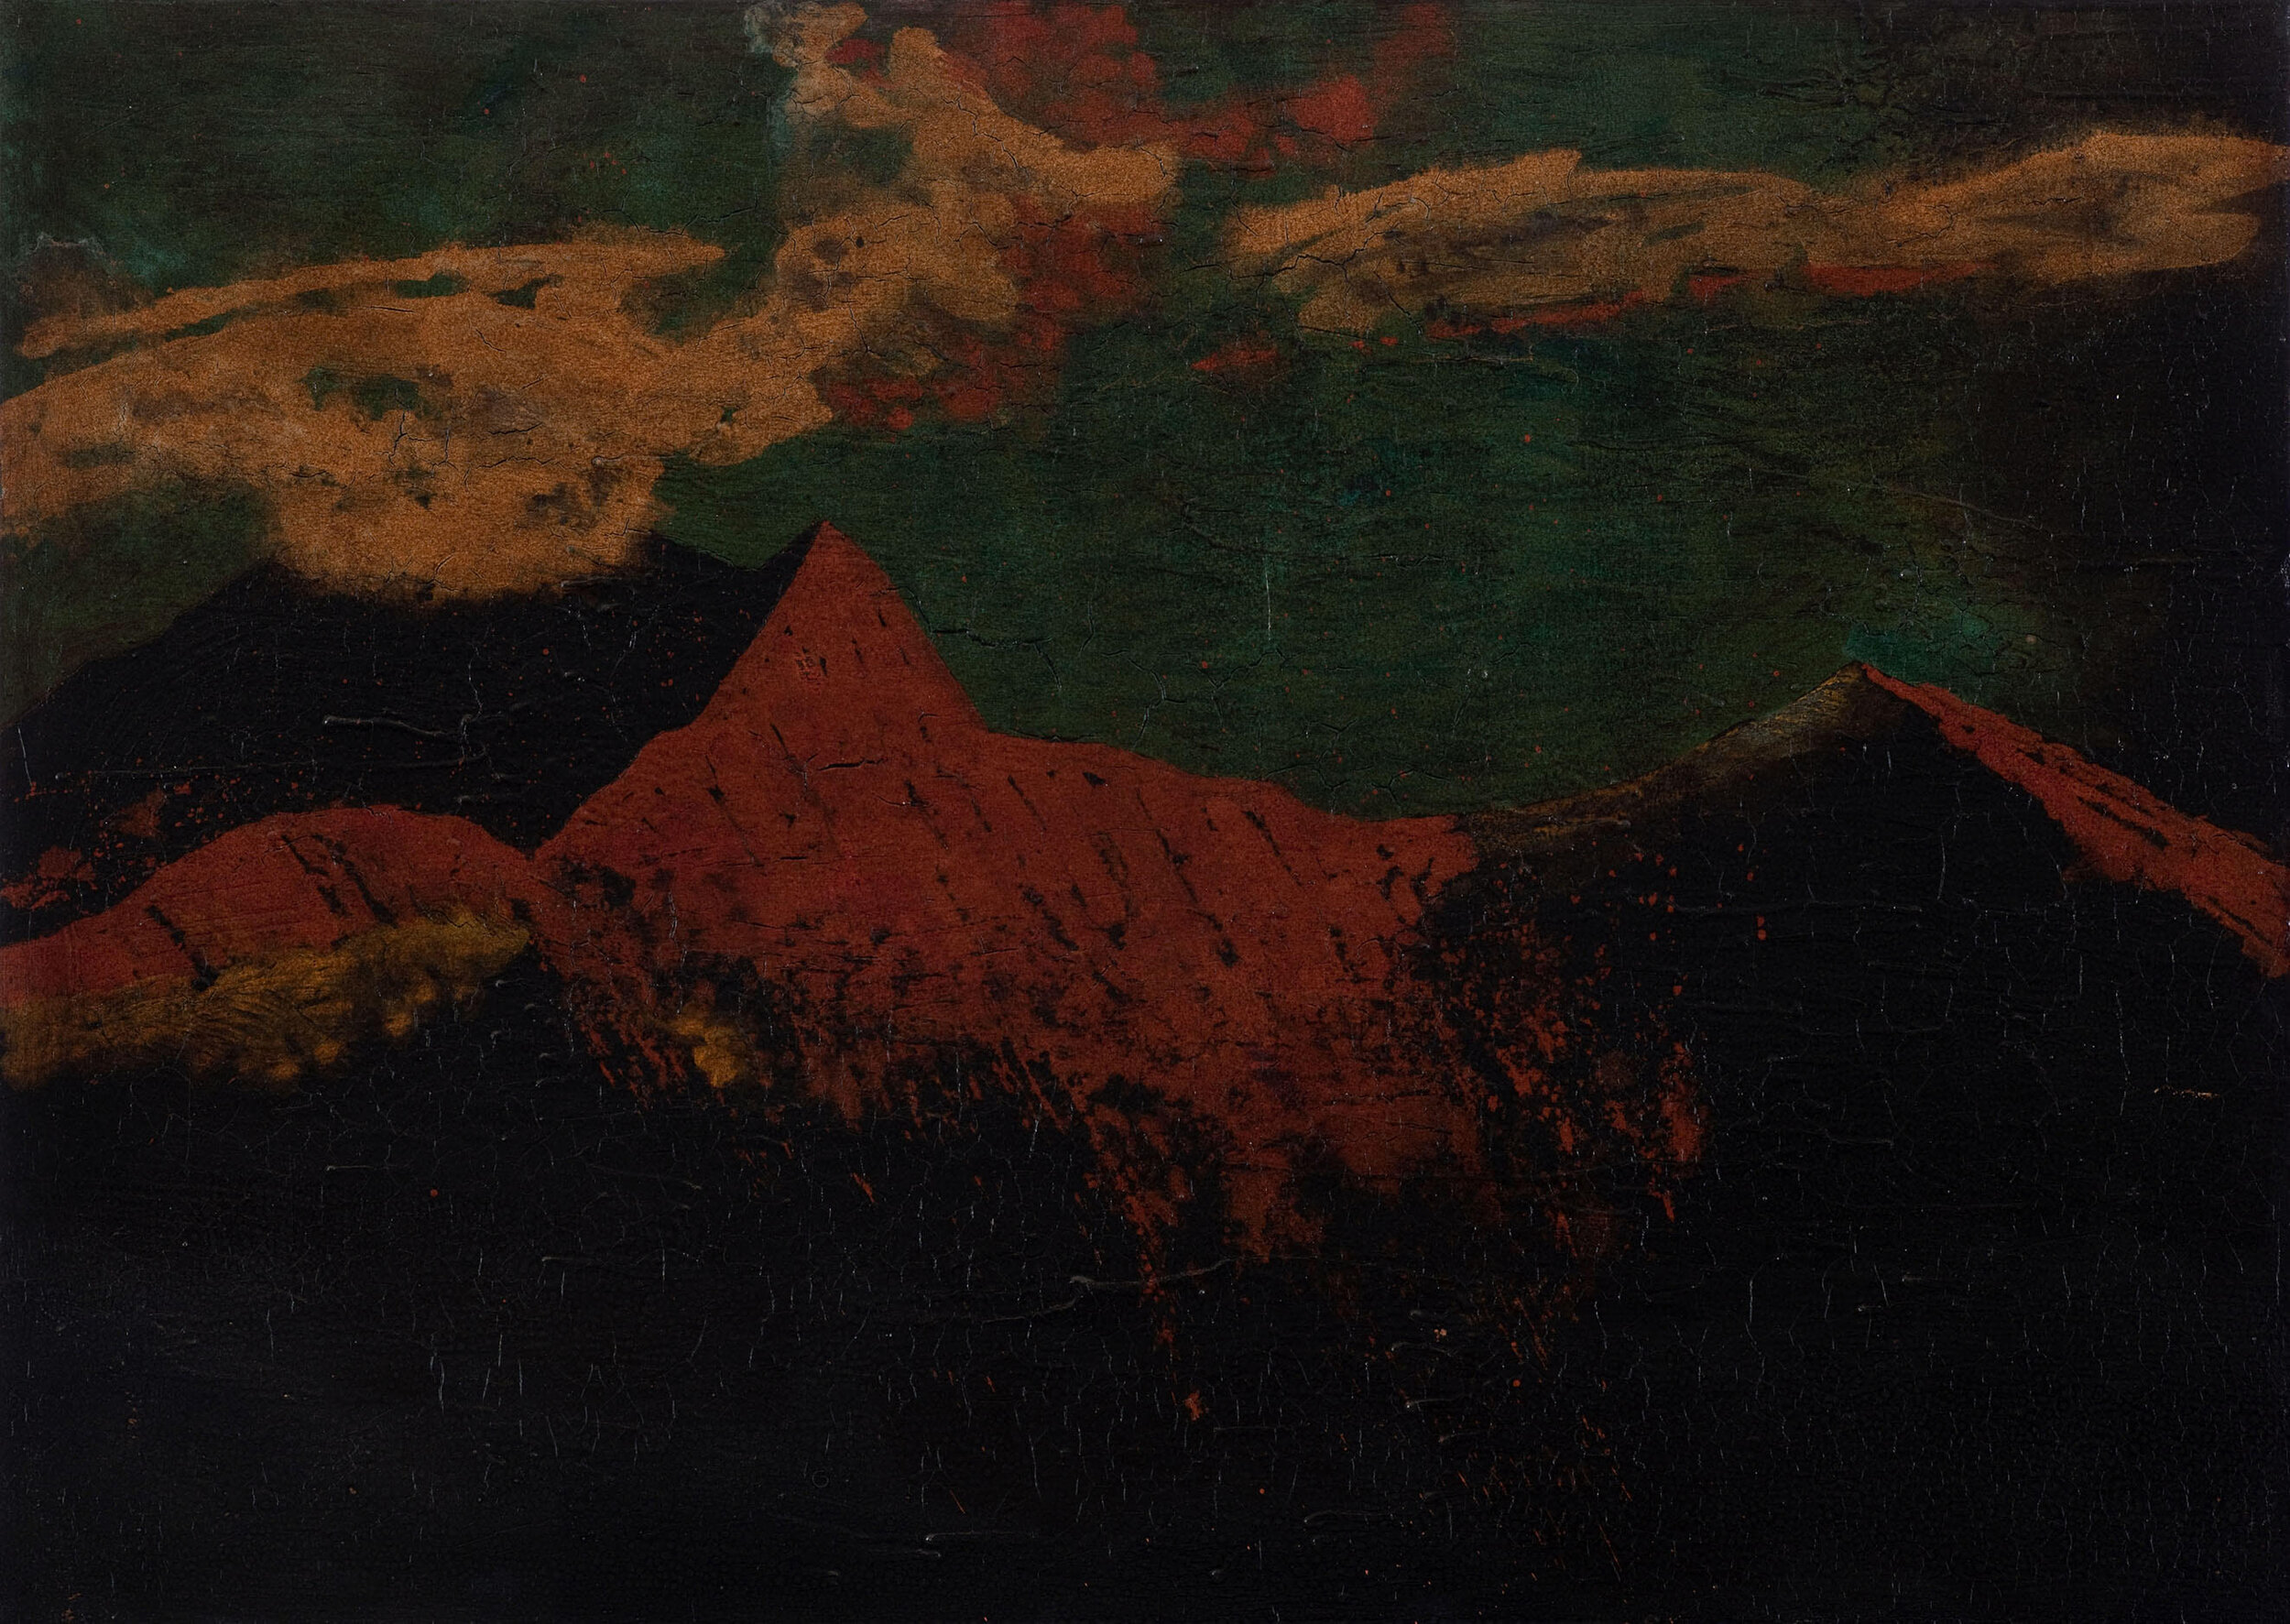 la nube toca la montaña (die Wolke berührt den Berg), 2011